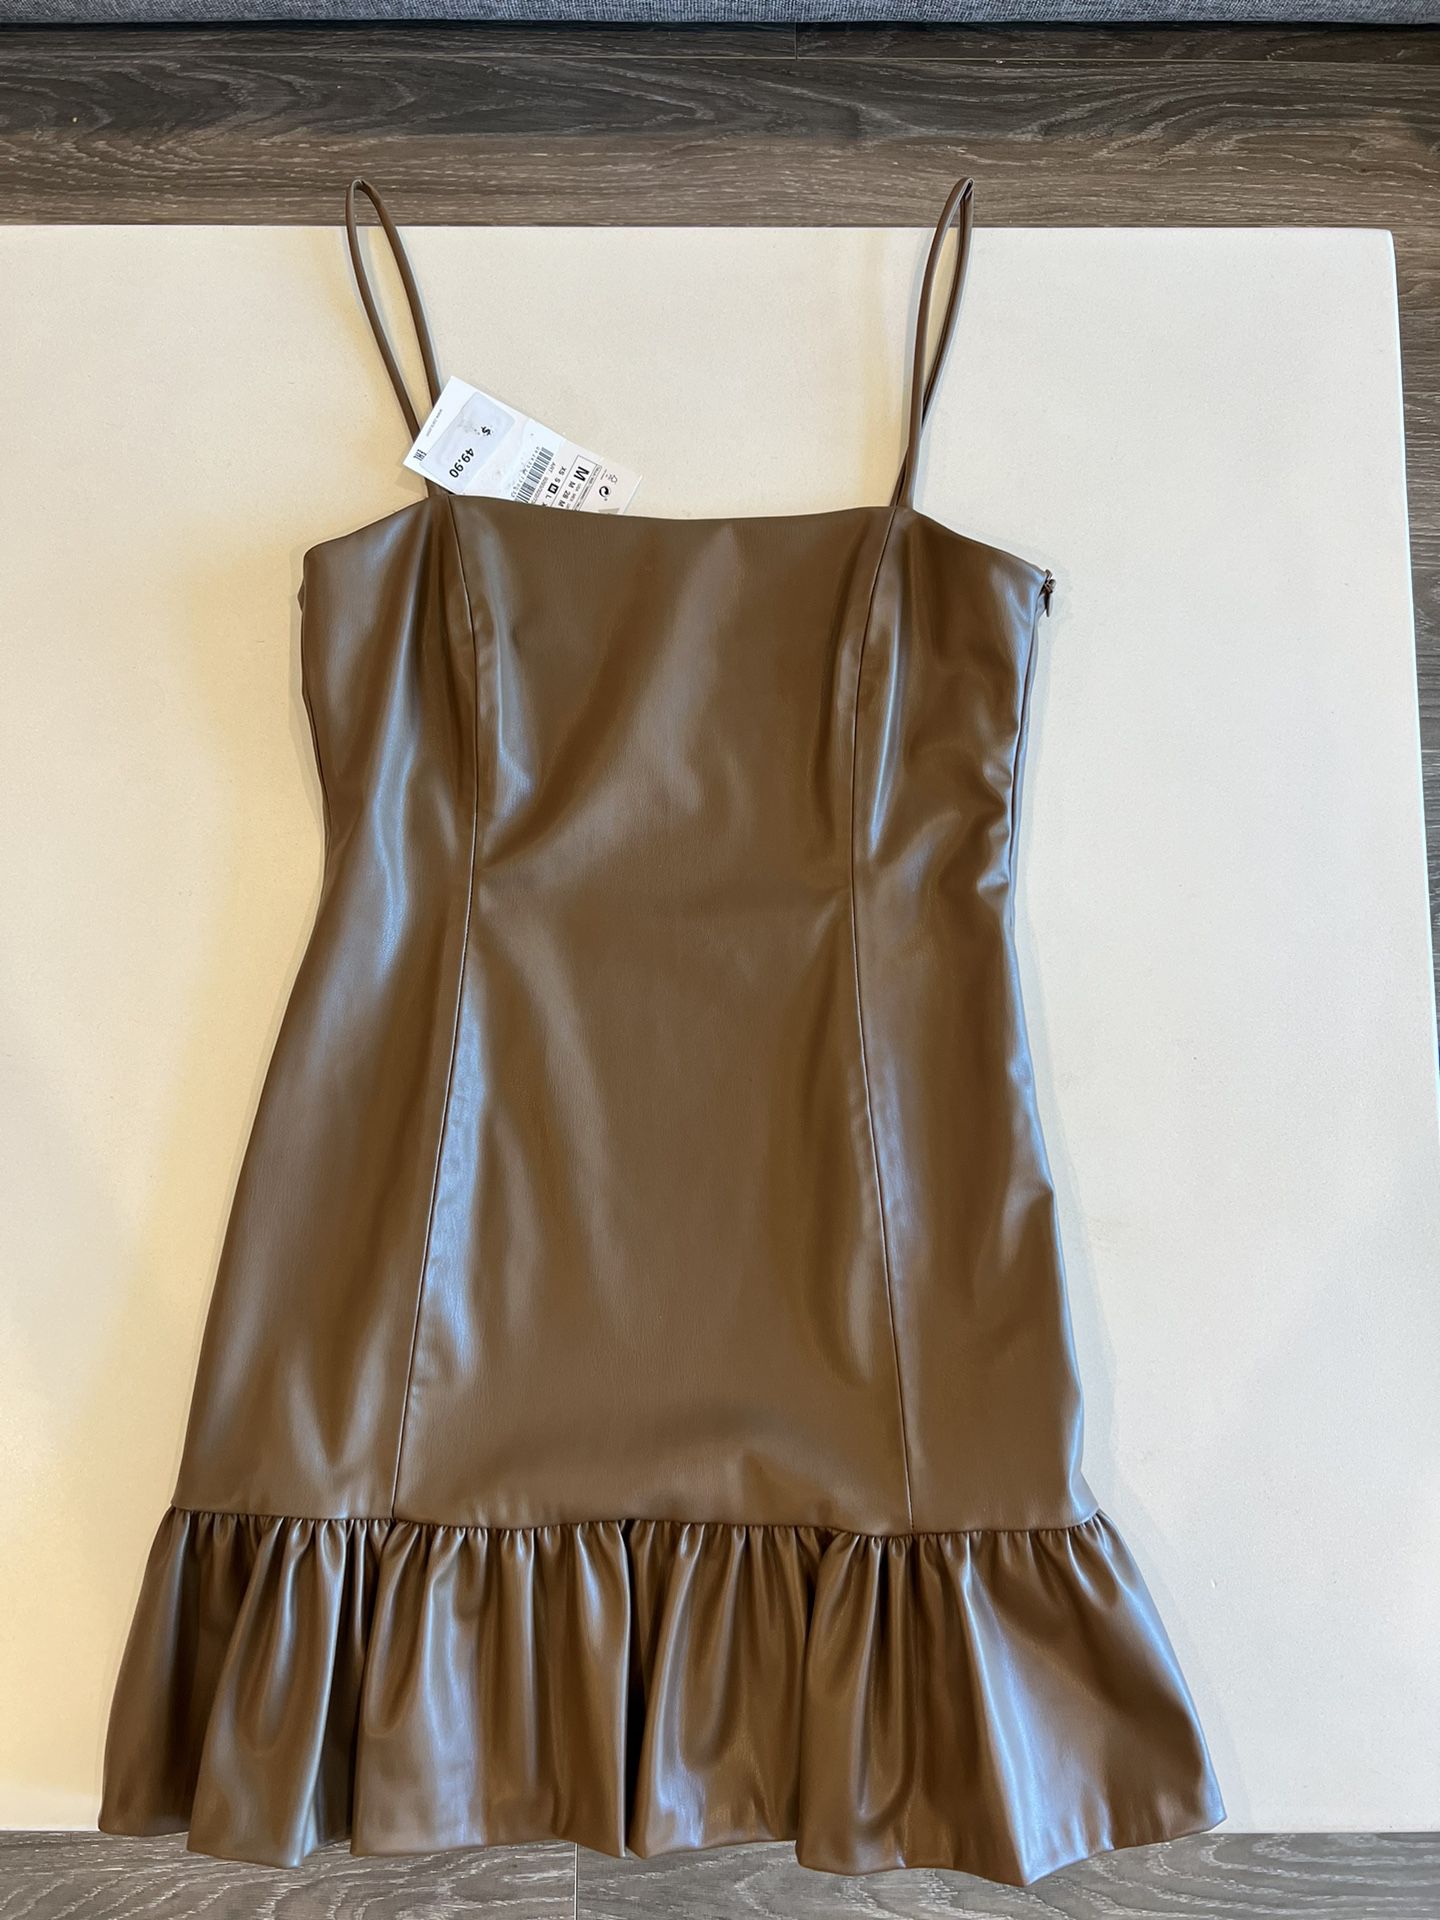 NEW Zara faux leather dress